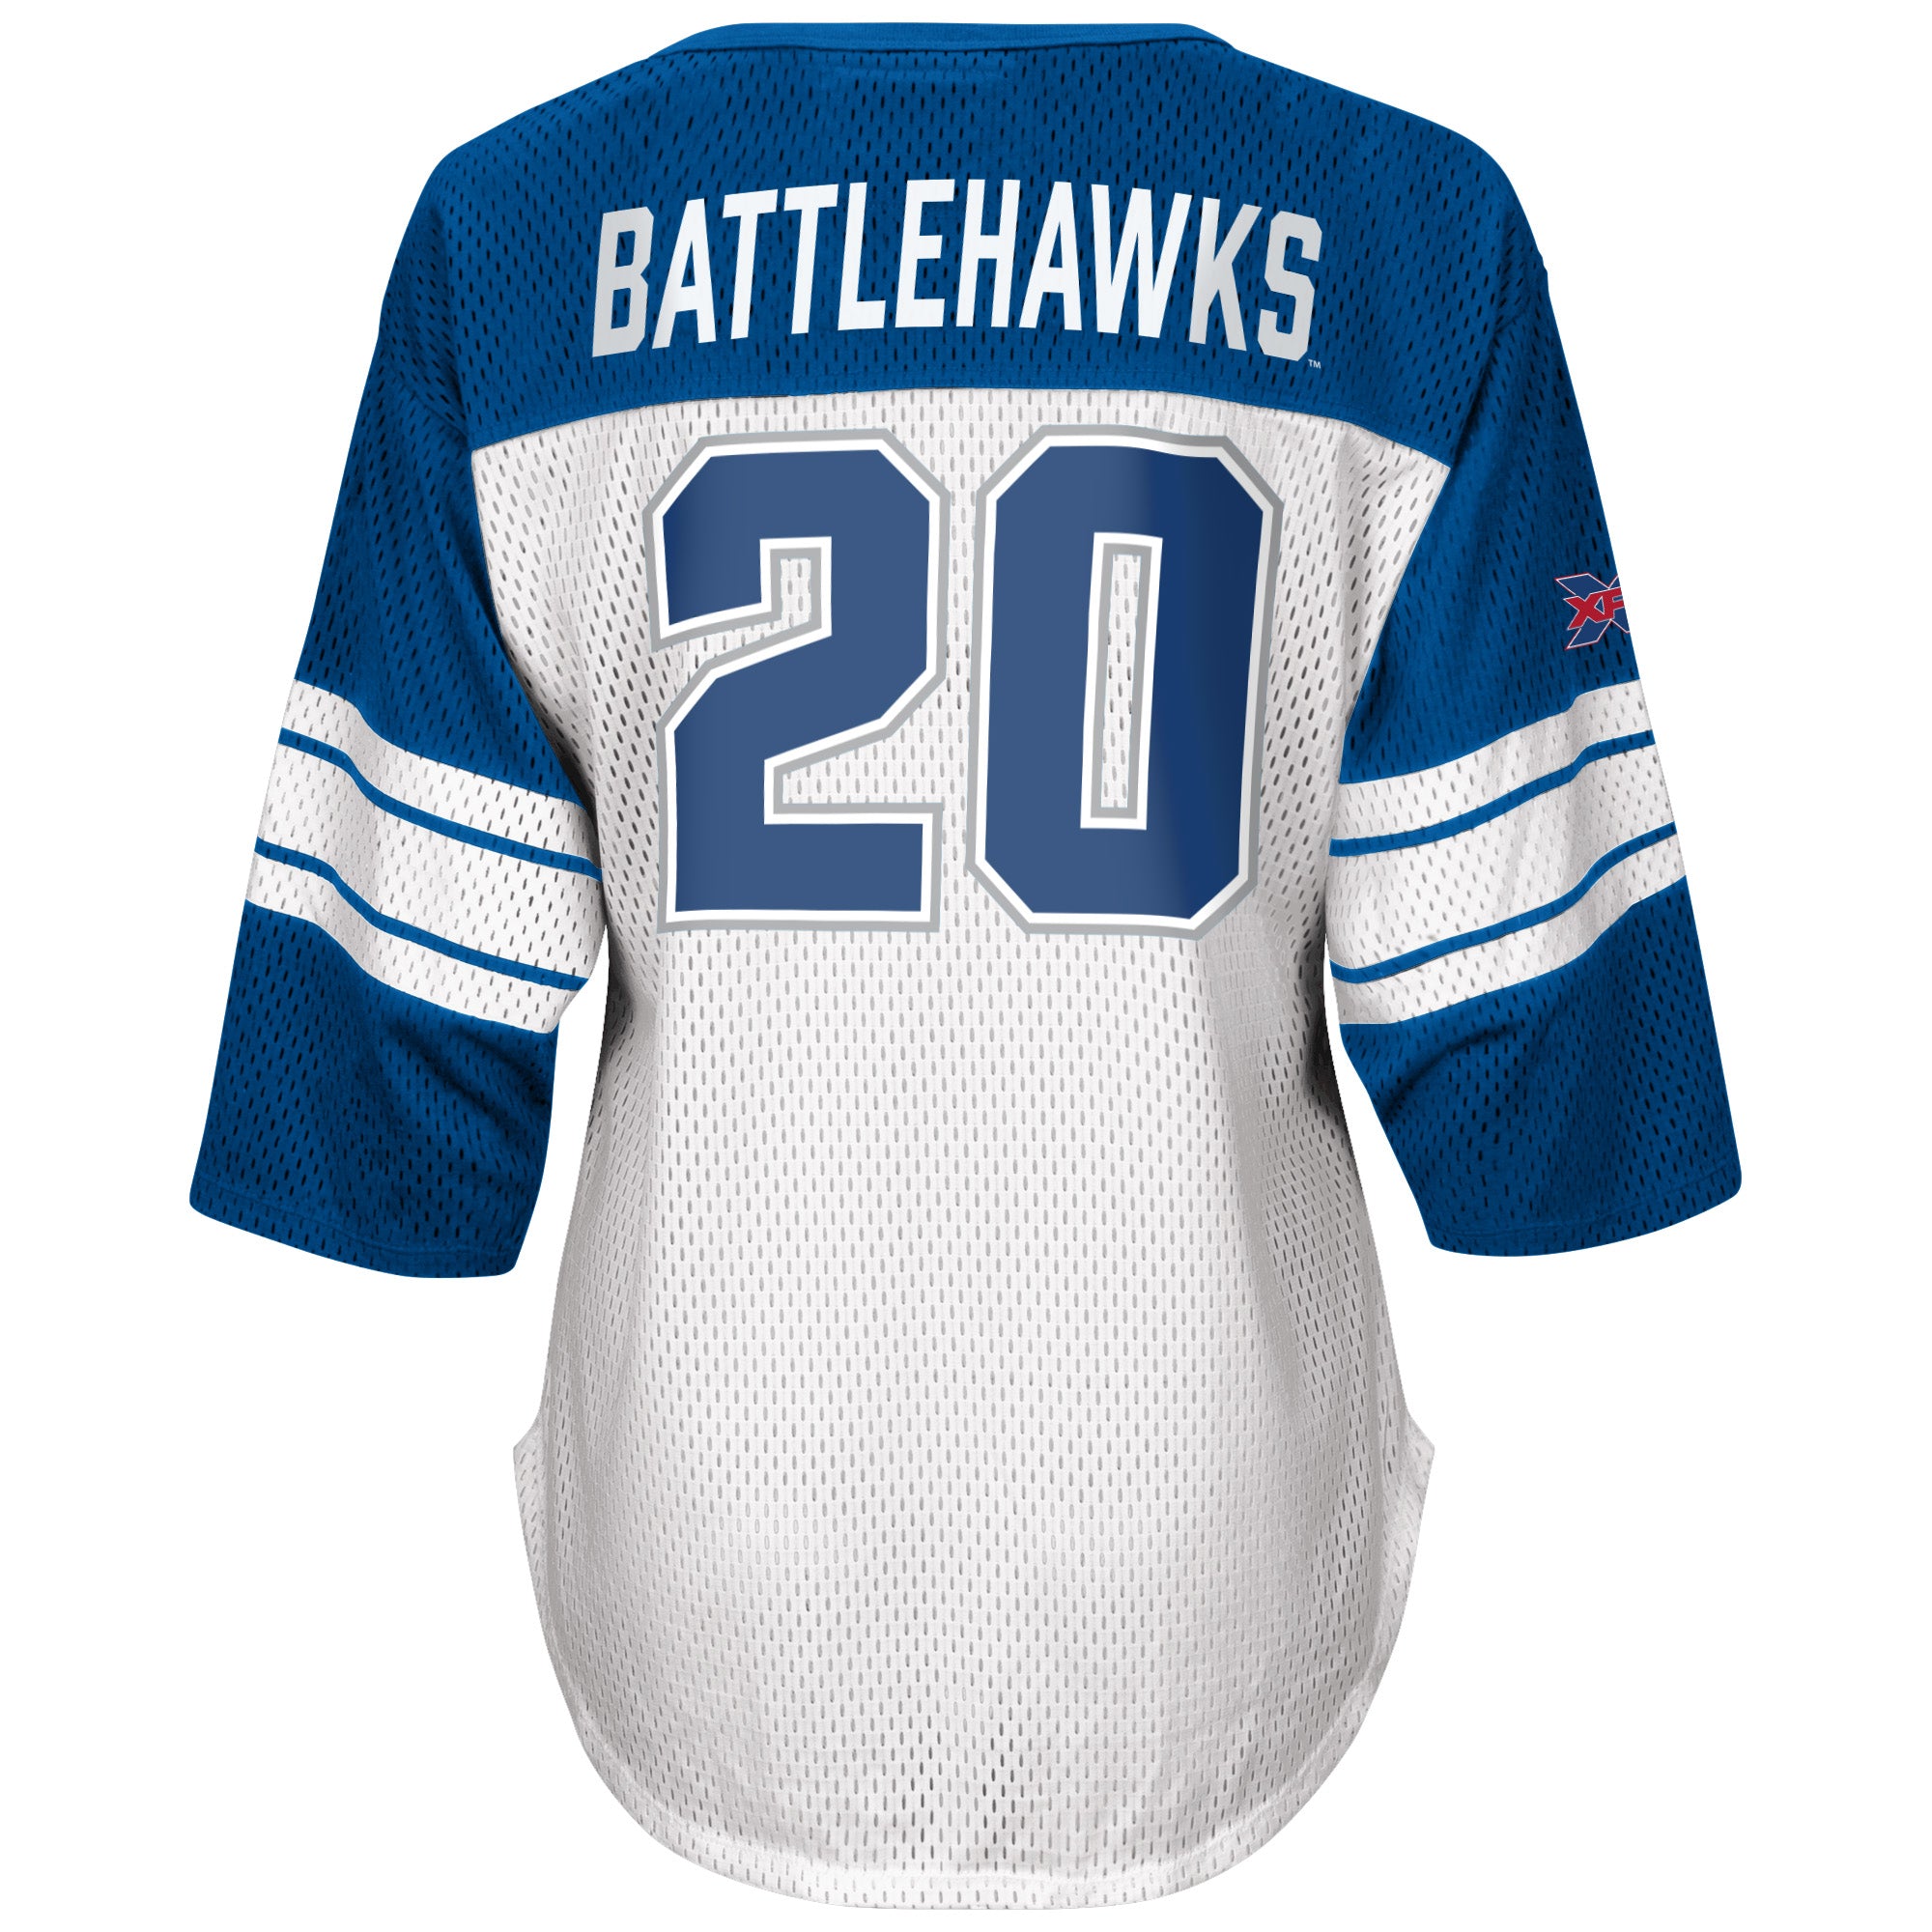 battlehawks jersey